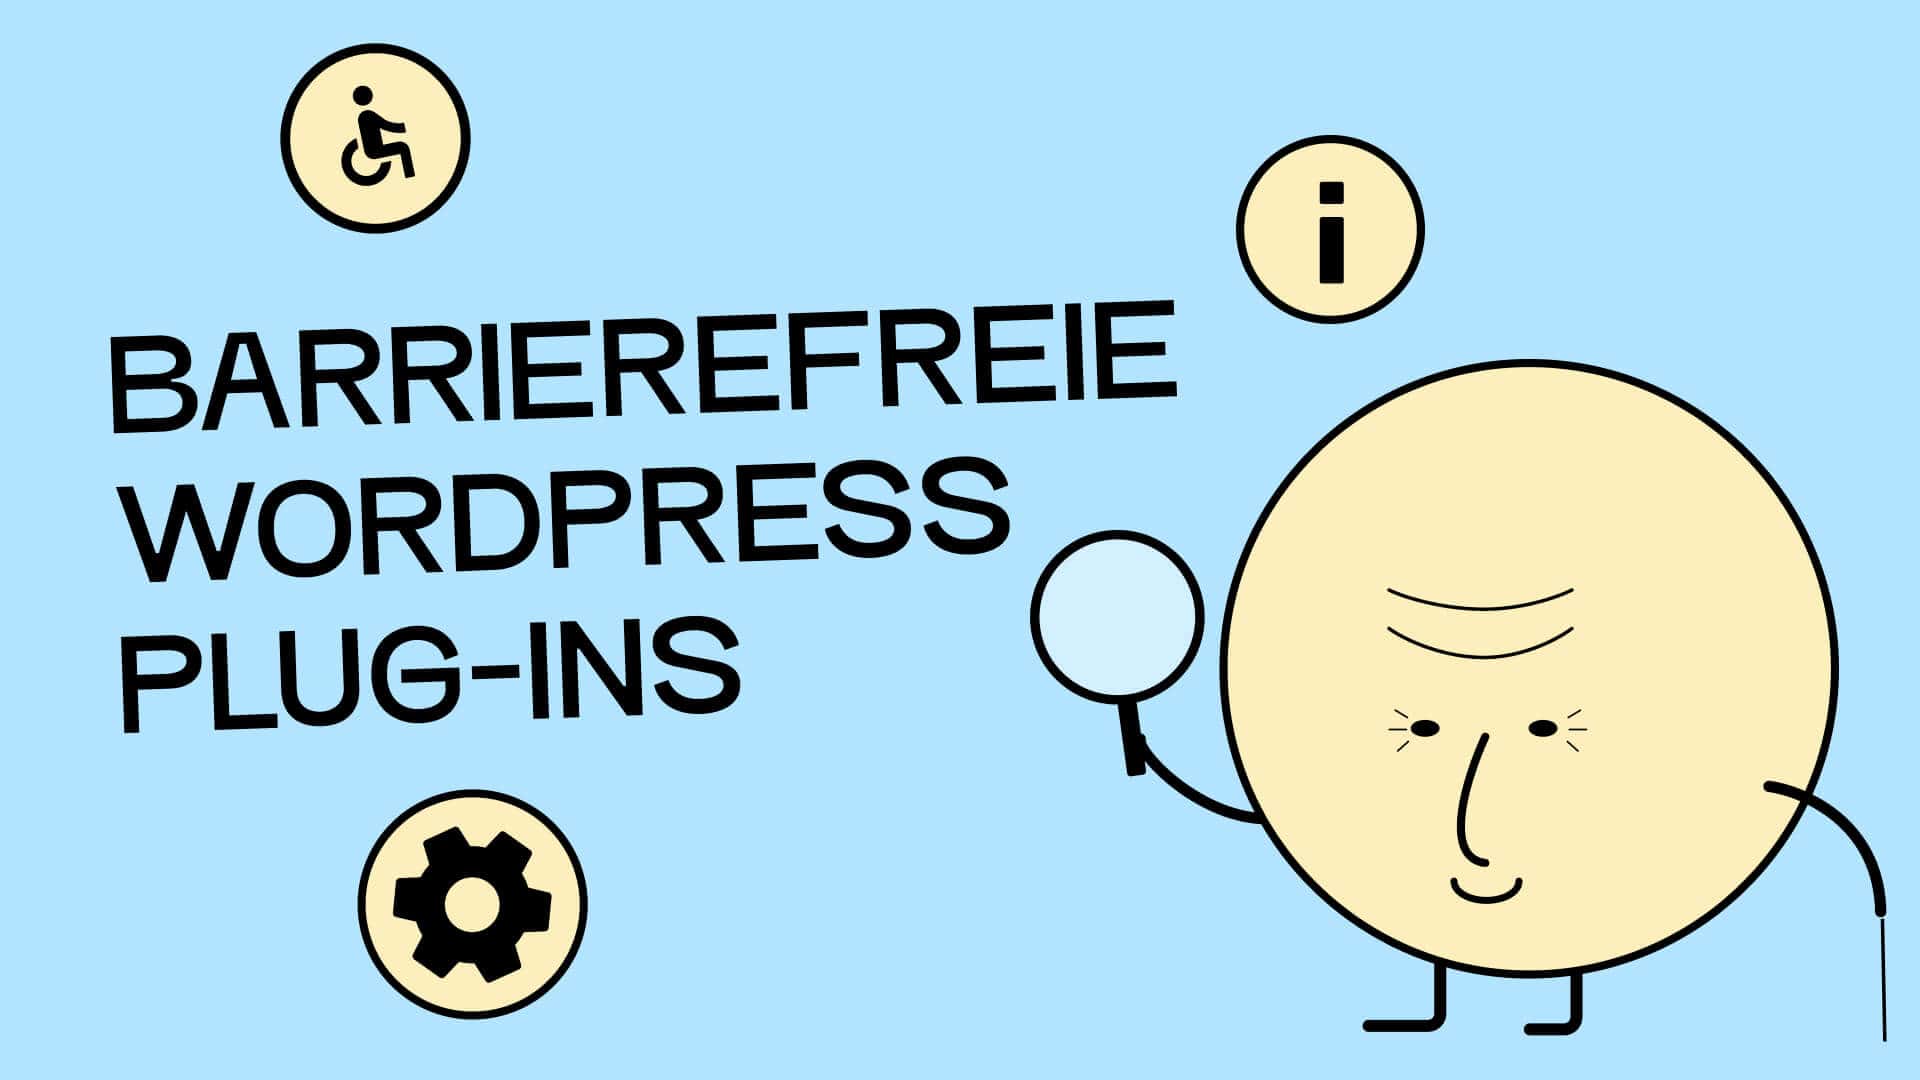 Eine illustrierte Figur, die eine alte Person mit Gehstock und Lupe darstellt. Daneben steht: "Barrierefreie WordPress Plug-ins."